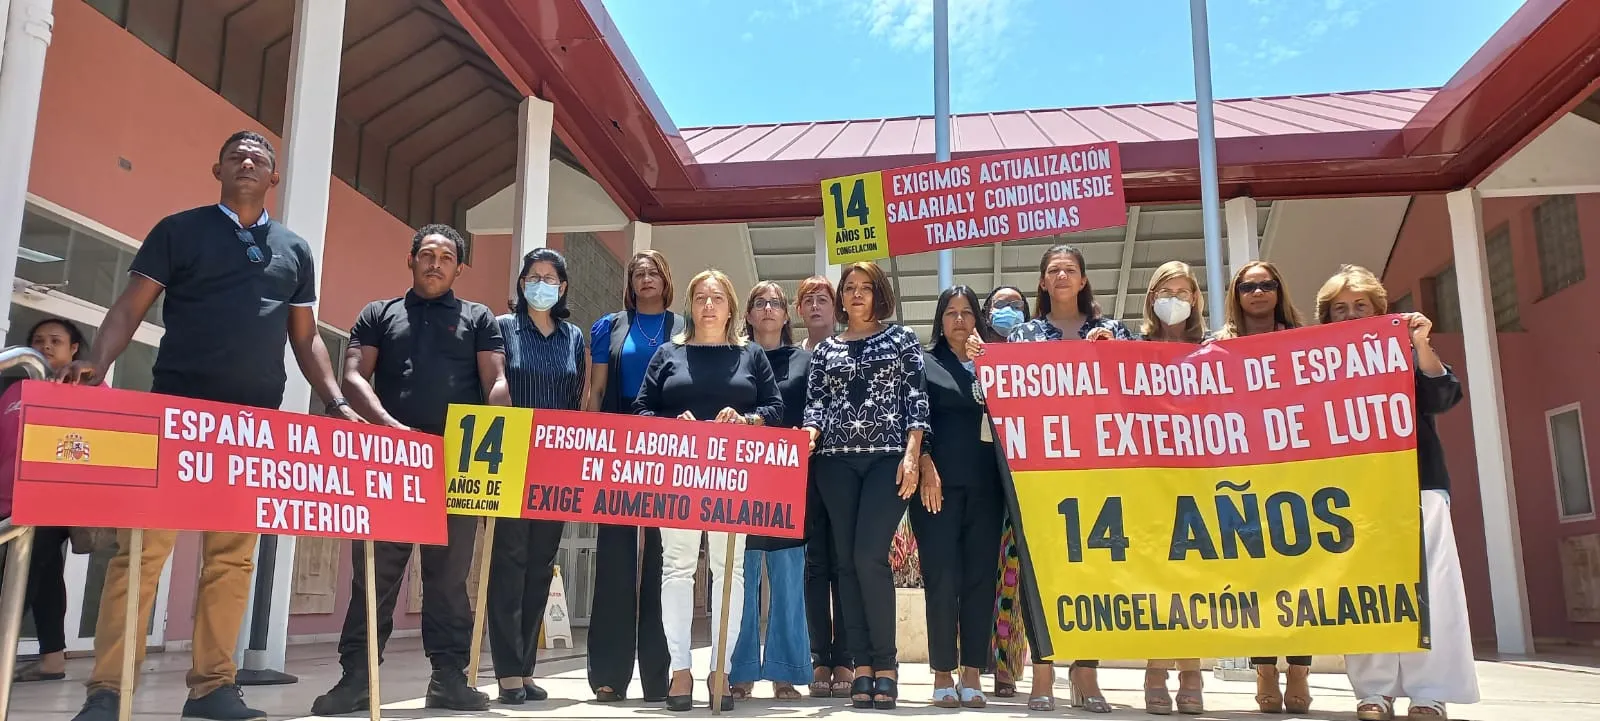 Empleados por españoles denuncian 14 años de sueldos congelados